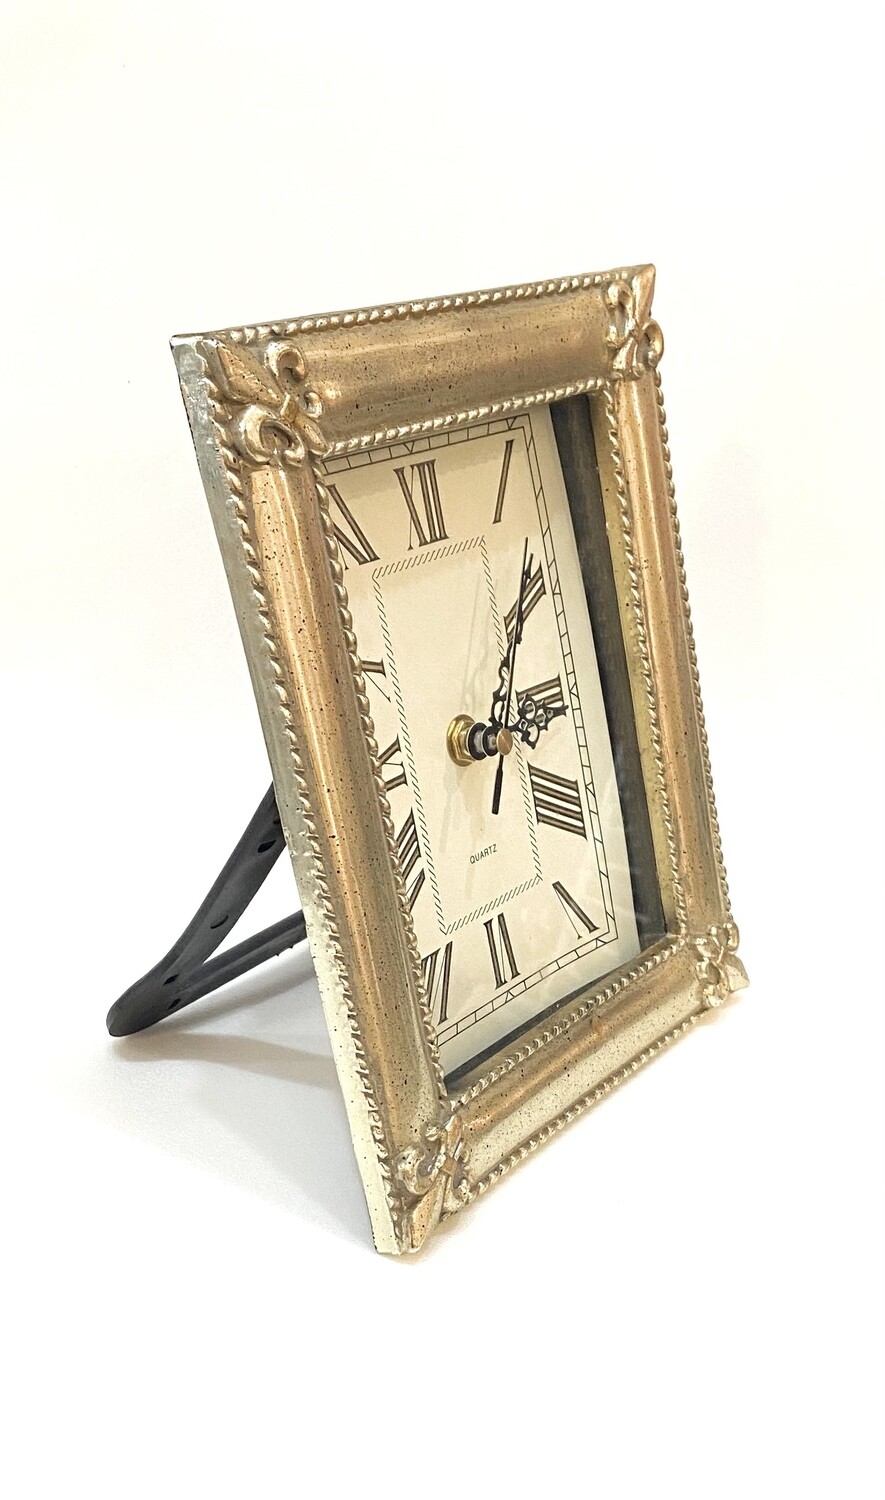 Framed Clock 7” x 8.5”